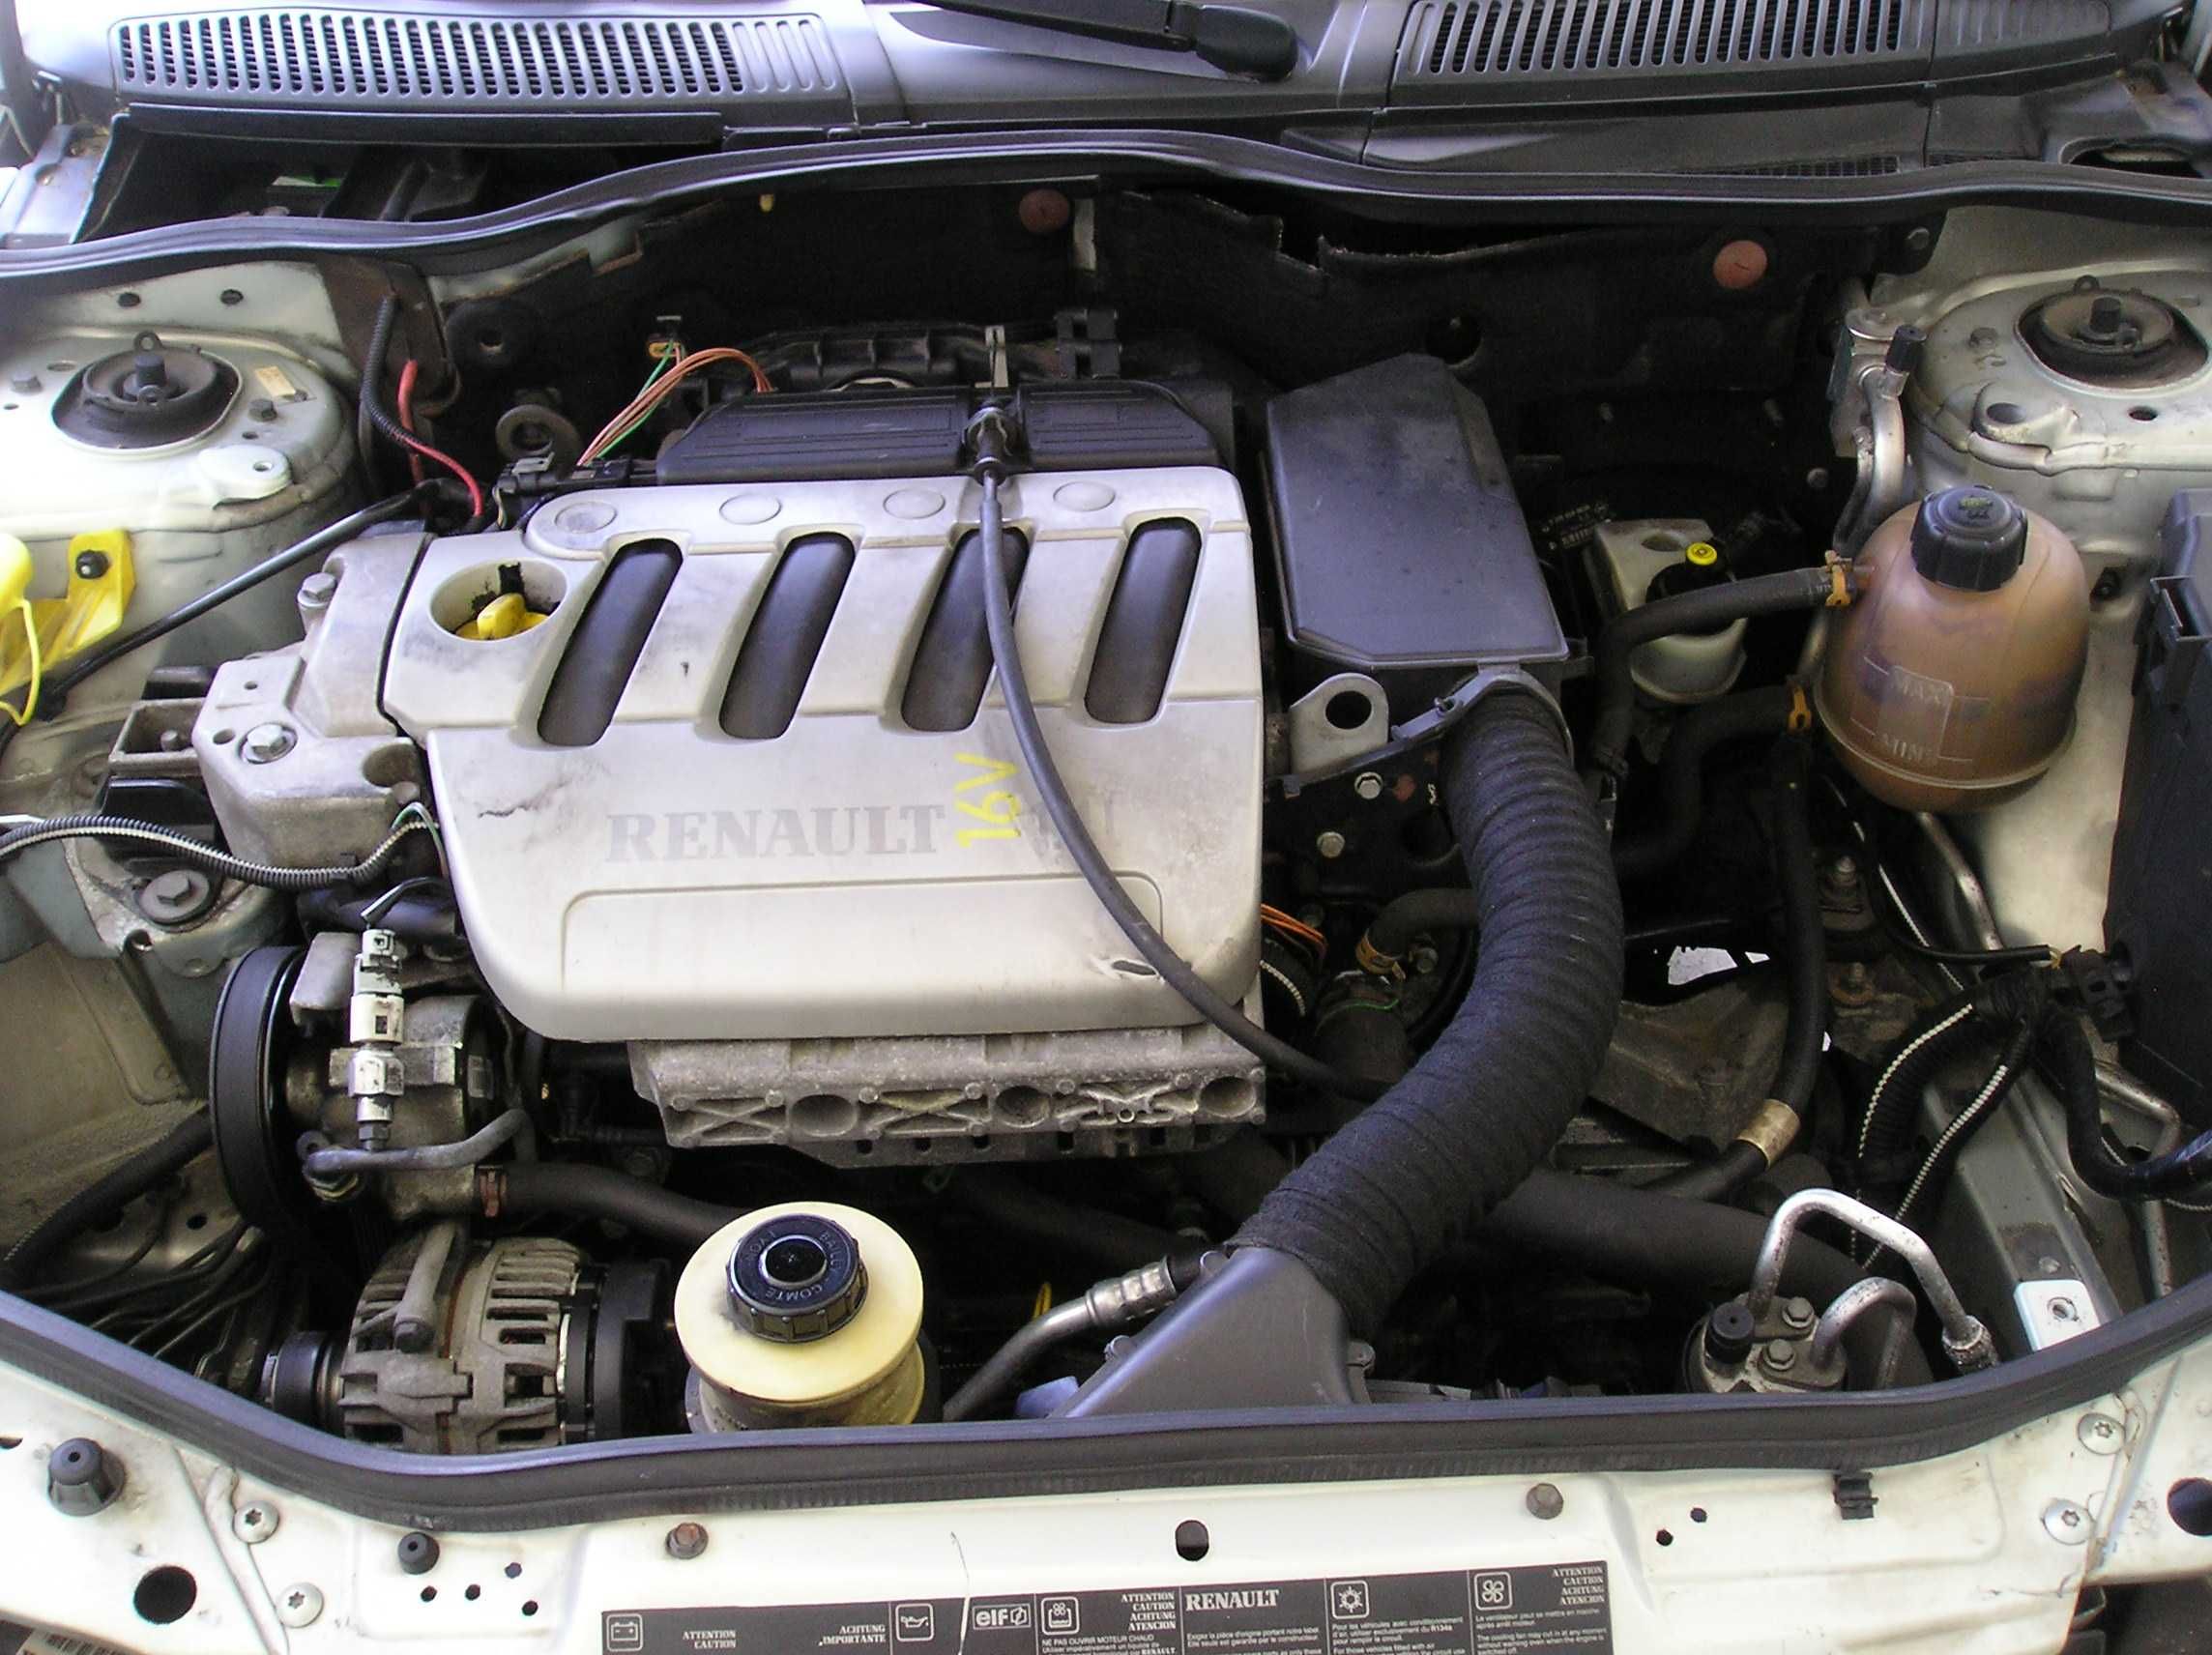 Renault Mégane Break (Famoso motor 1.4 16v) Ler observações